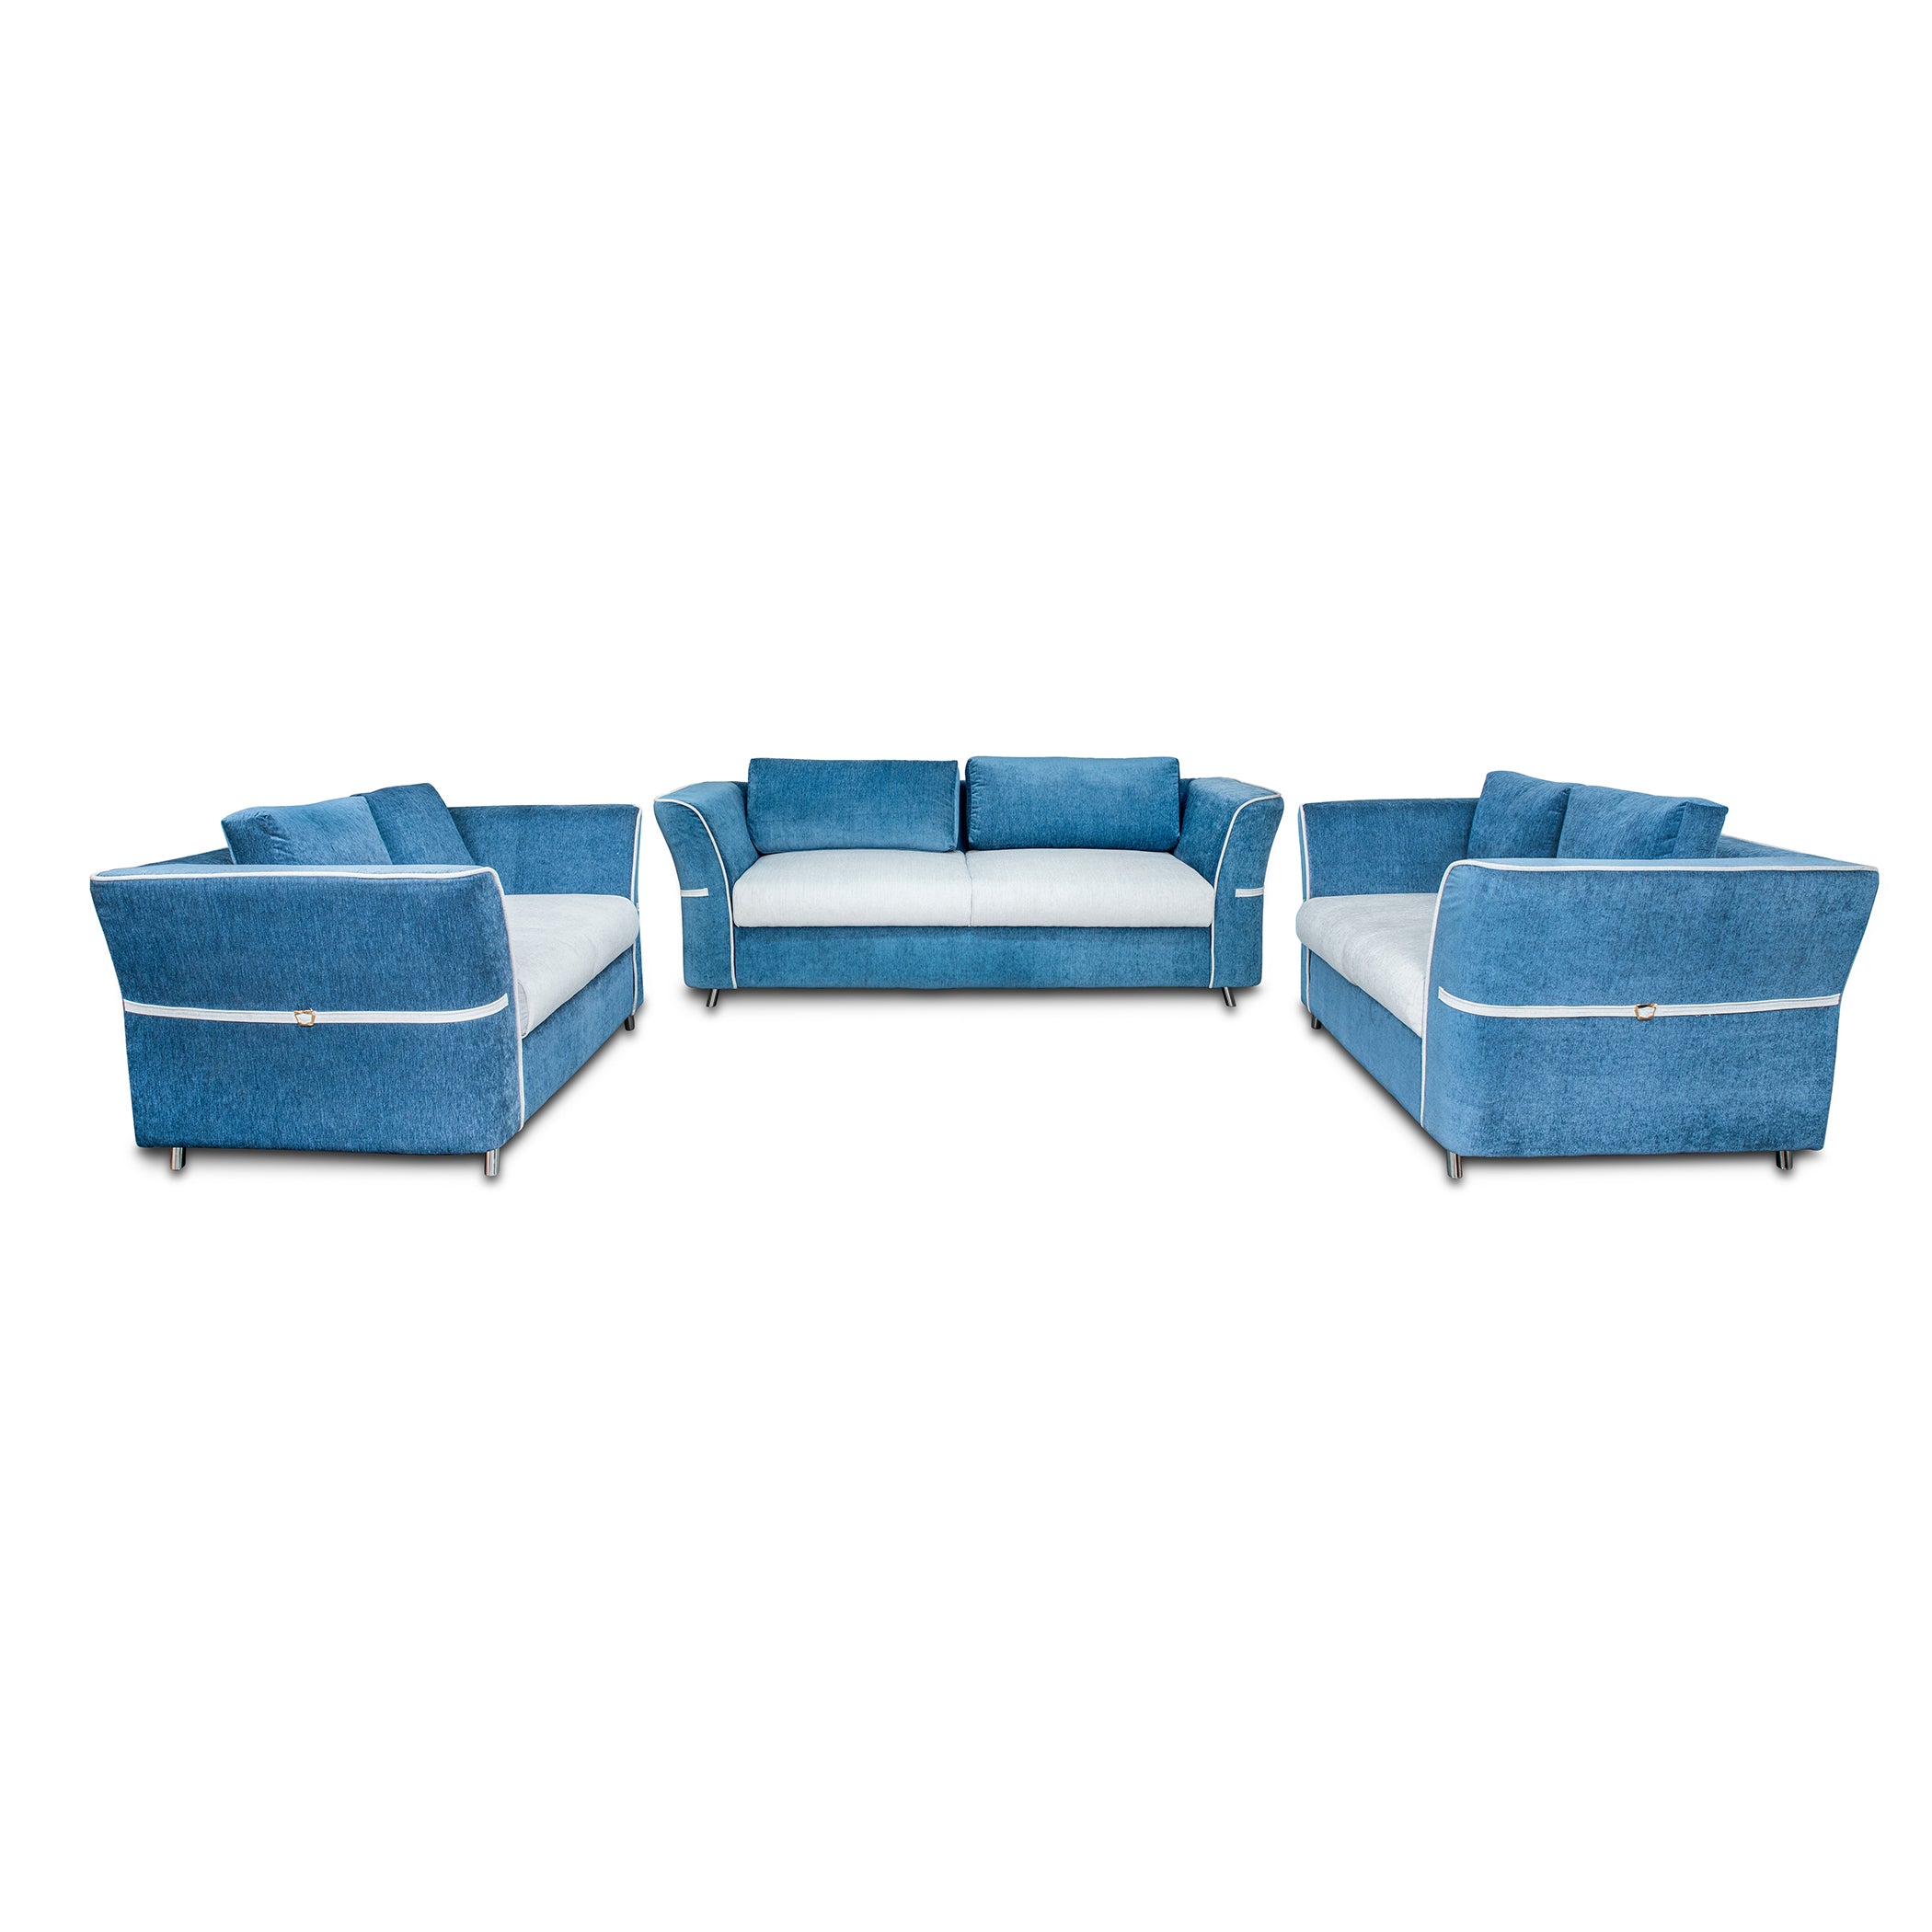 NewYork BlueTorquoise 2S Sofa by Zorin Zorin